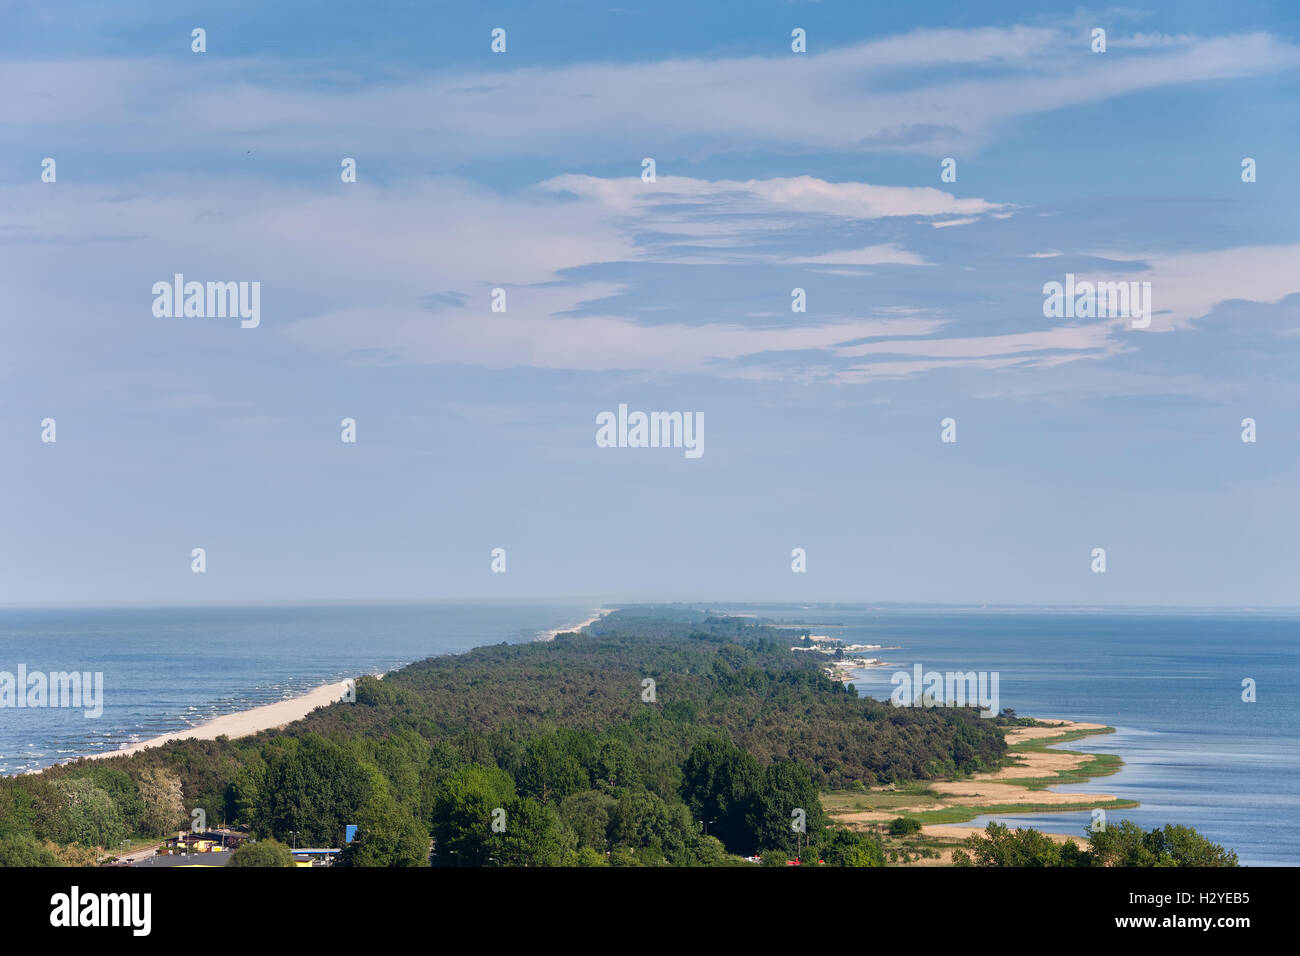 Die Halbinsel Hel in Polen, Ostsee und Putziger Wiek (Zatoka Pucka), Luftbild Stockfoto